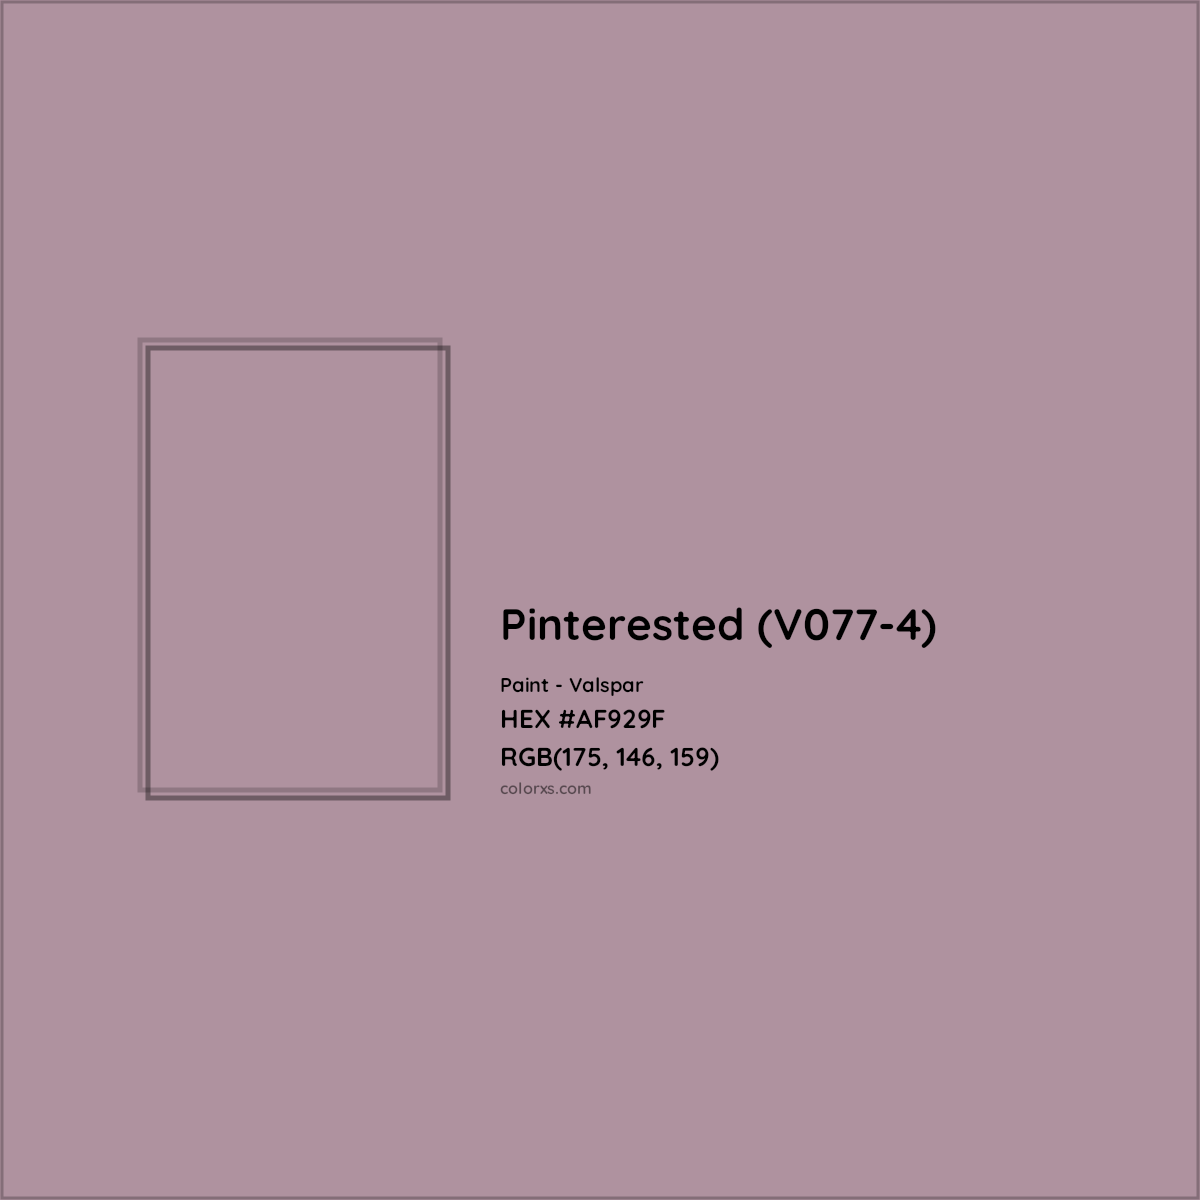 HEX #AF929F Pinterested (V077-4) Paint Valspar - Color Code